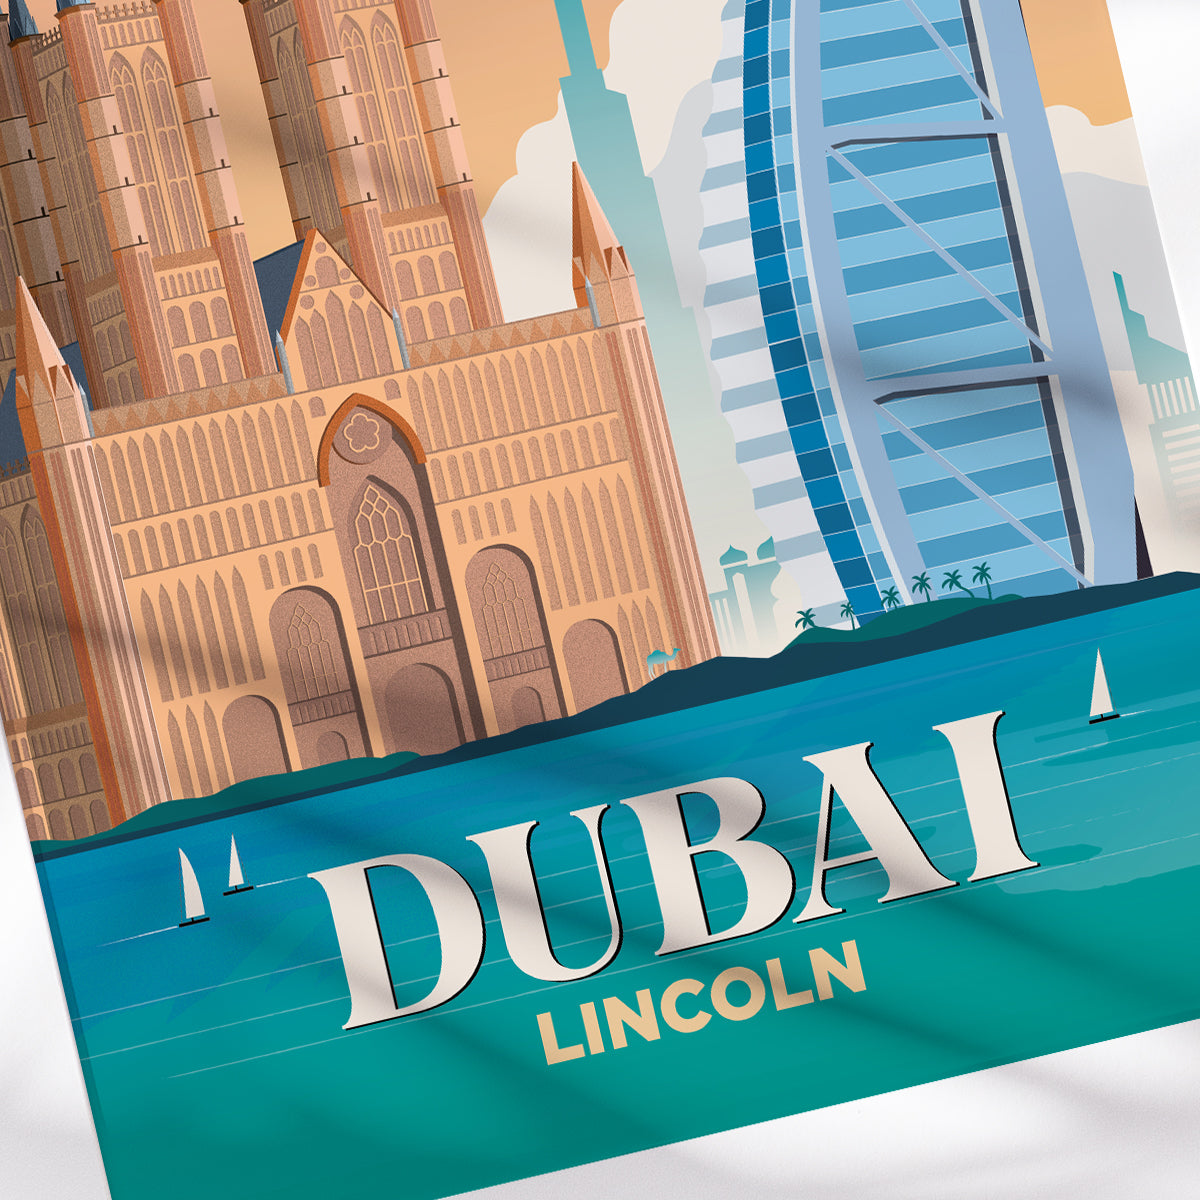 Dubai x Lincoln Print